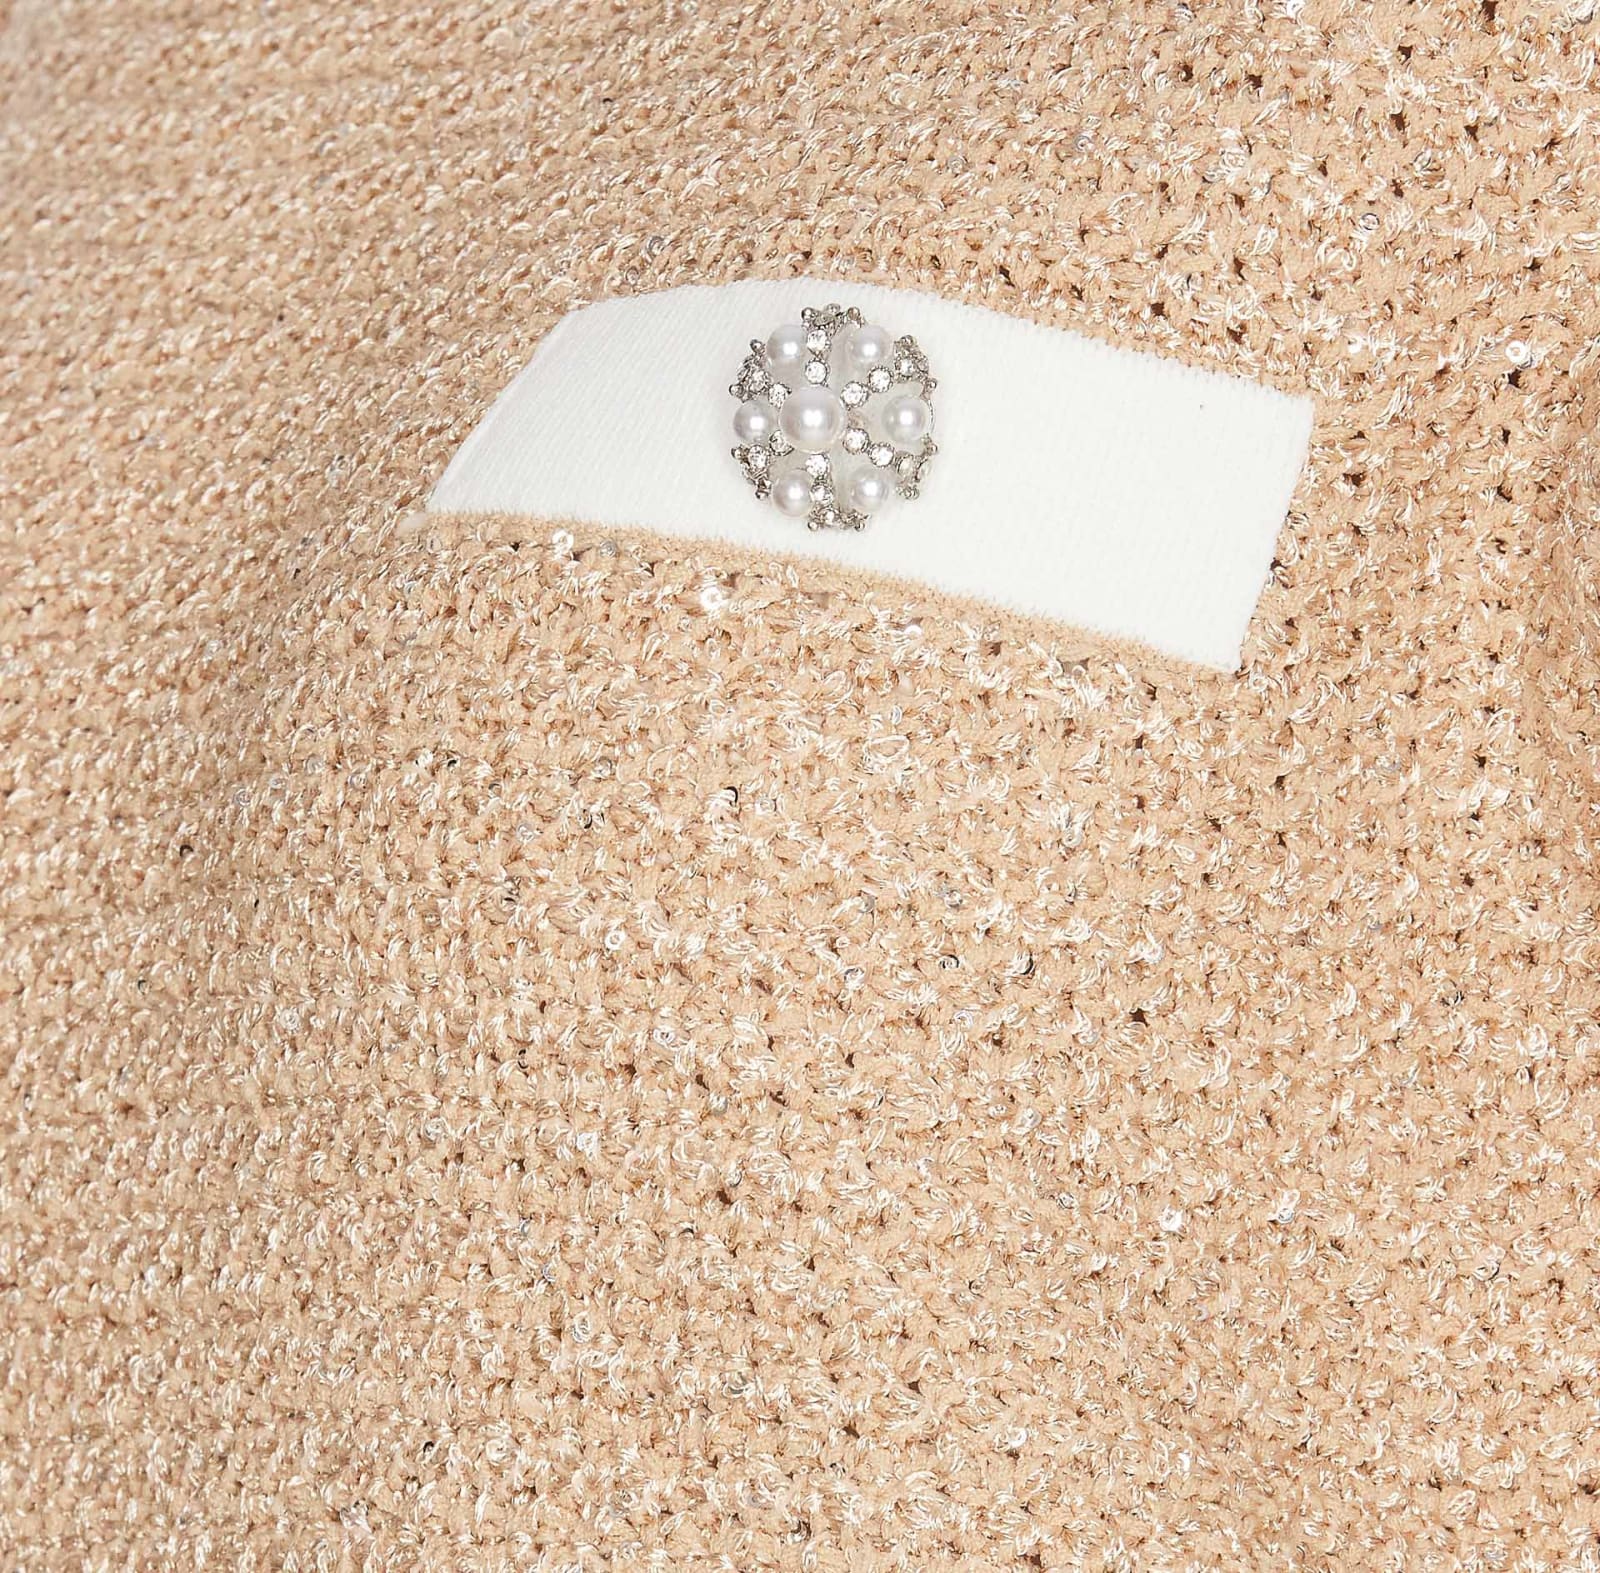 Shop Liu •jo Short Sleeves Sweater In Beige